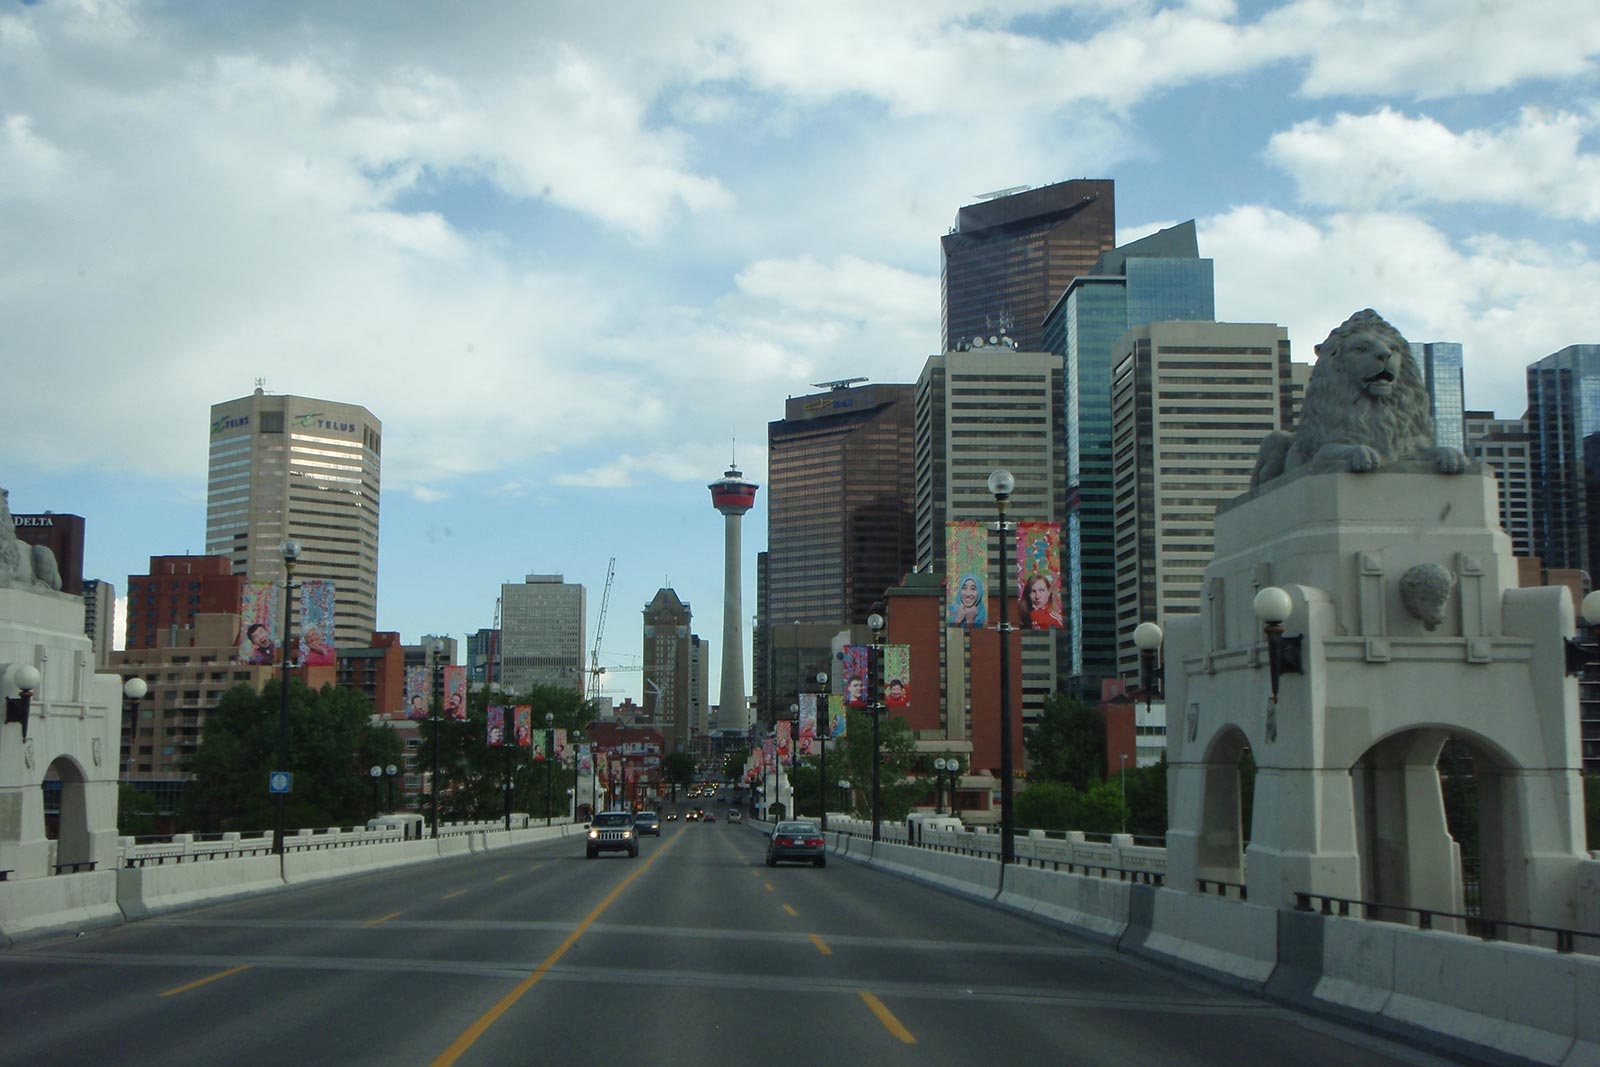 Freeway and buildings in Calgary. Cowboys in Calgary